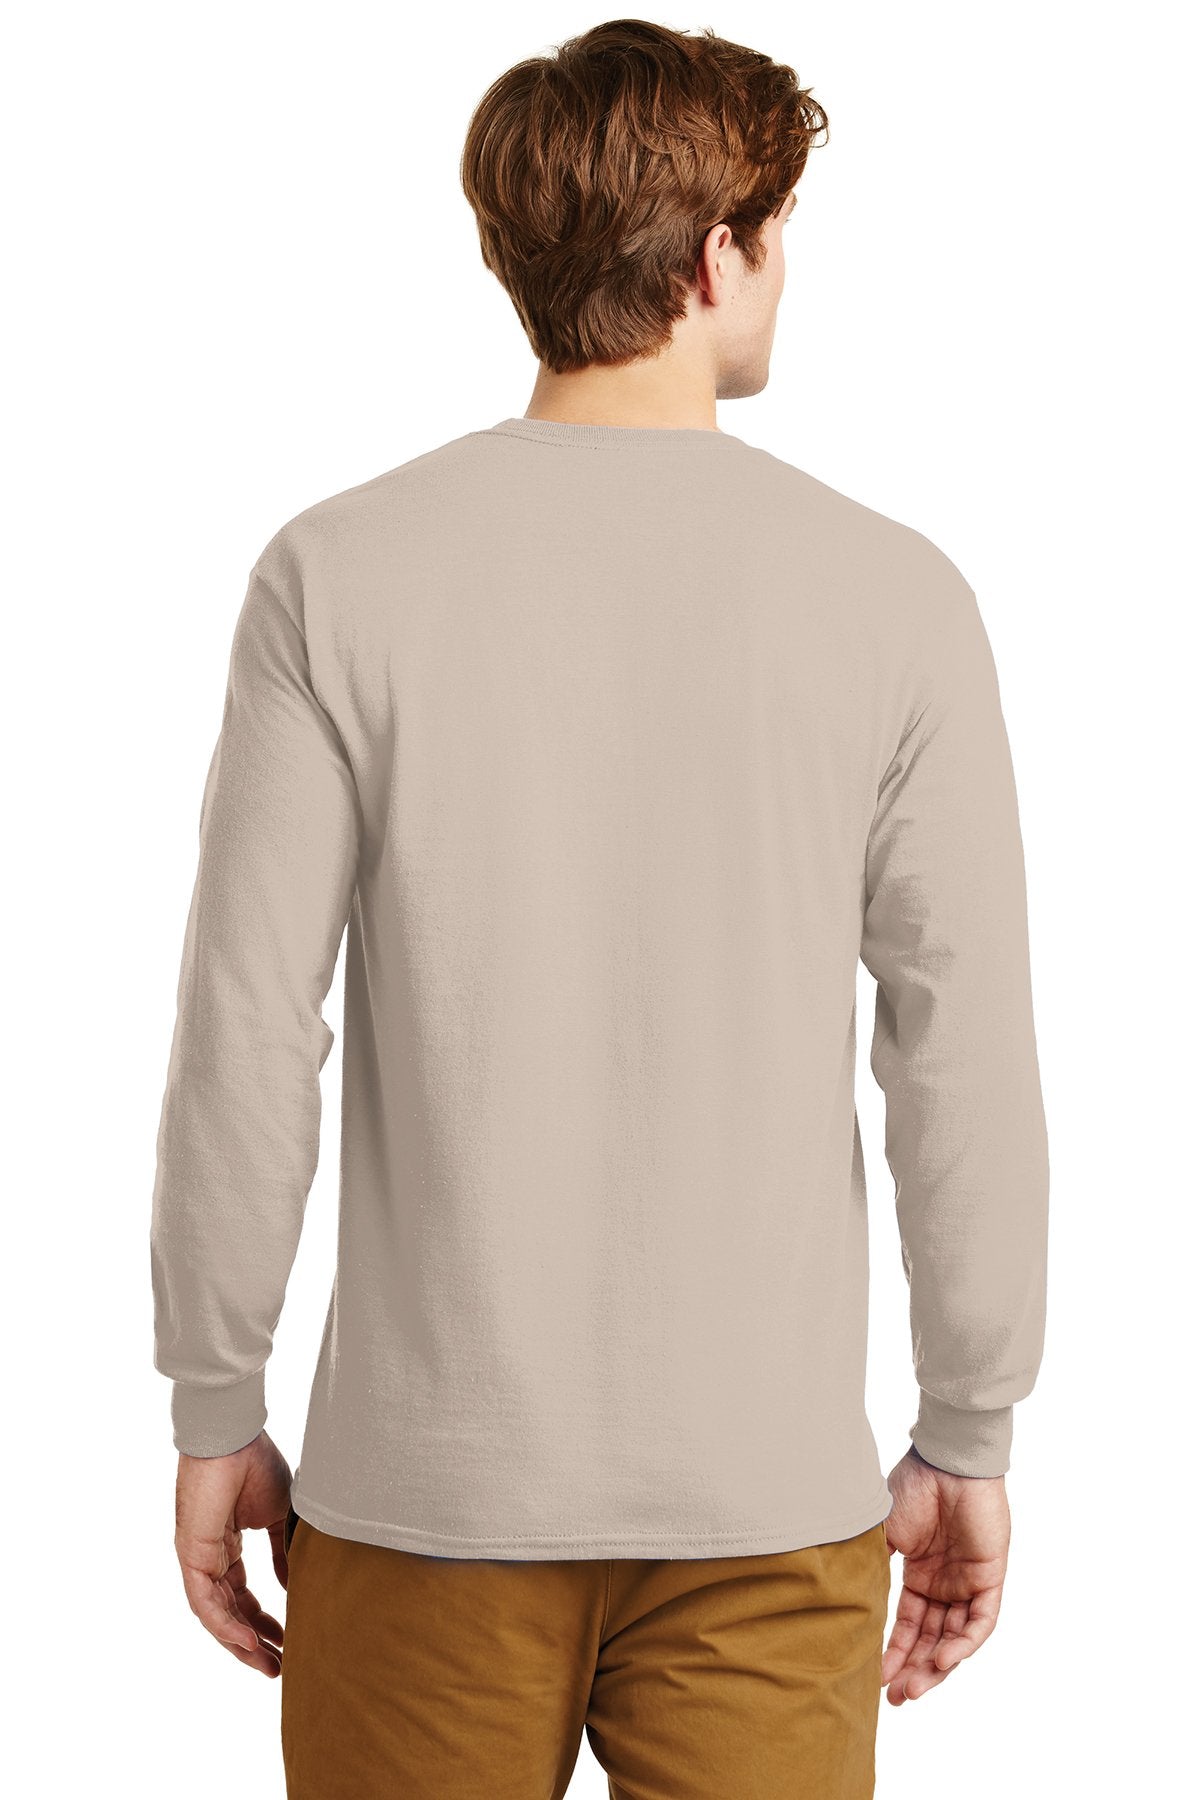 gildan ultra cotton long sleeve t shirt g2400 sand